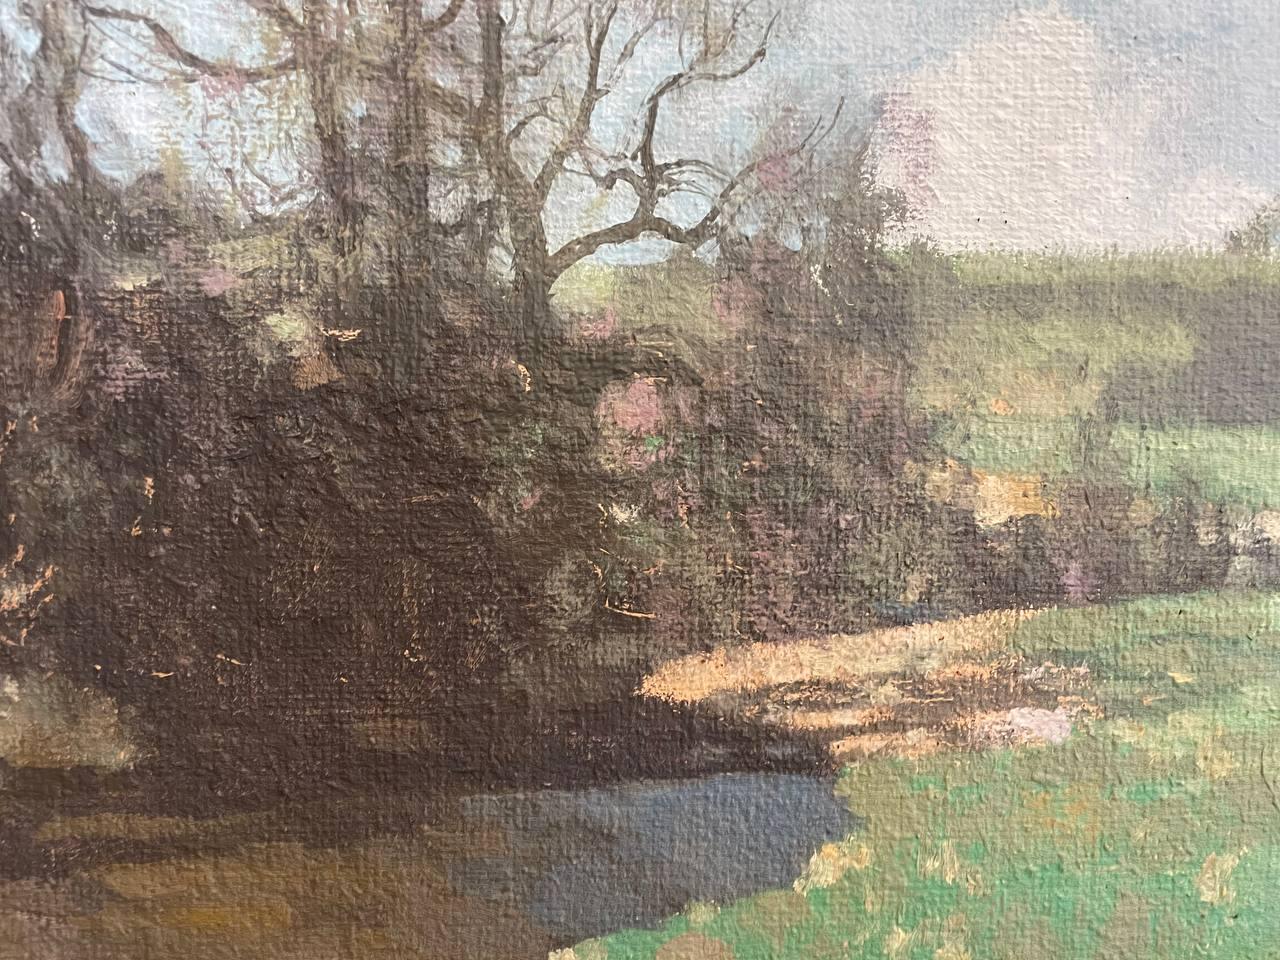 GEORGE HOUSTON RSA RSW RI (1869-1947)
Peintre impressionniste écossais de paysages. Il a vécu à Ayrshire et à Glasgow. Exposé au Royal Glasgow Institute of the Fine Arts, à la Walker Art Gallery Liverpool, à la Fine Art Society et ailleurs. Élu à la